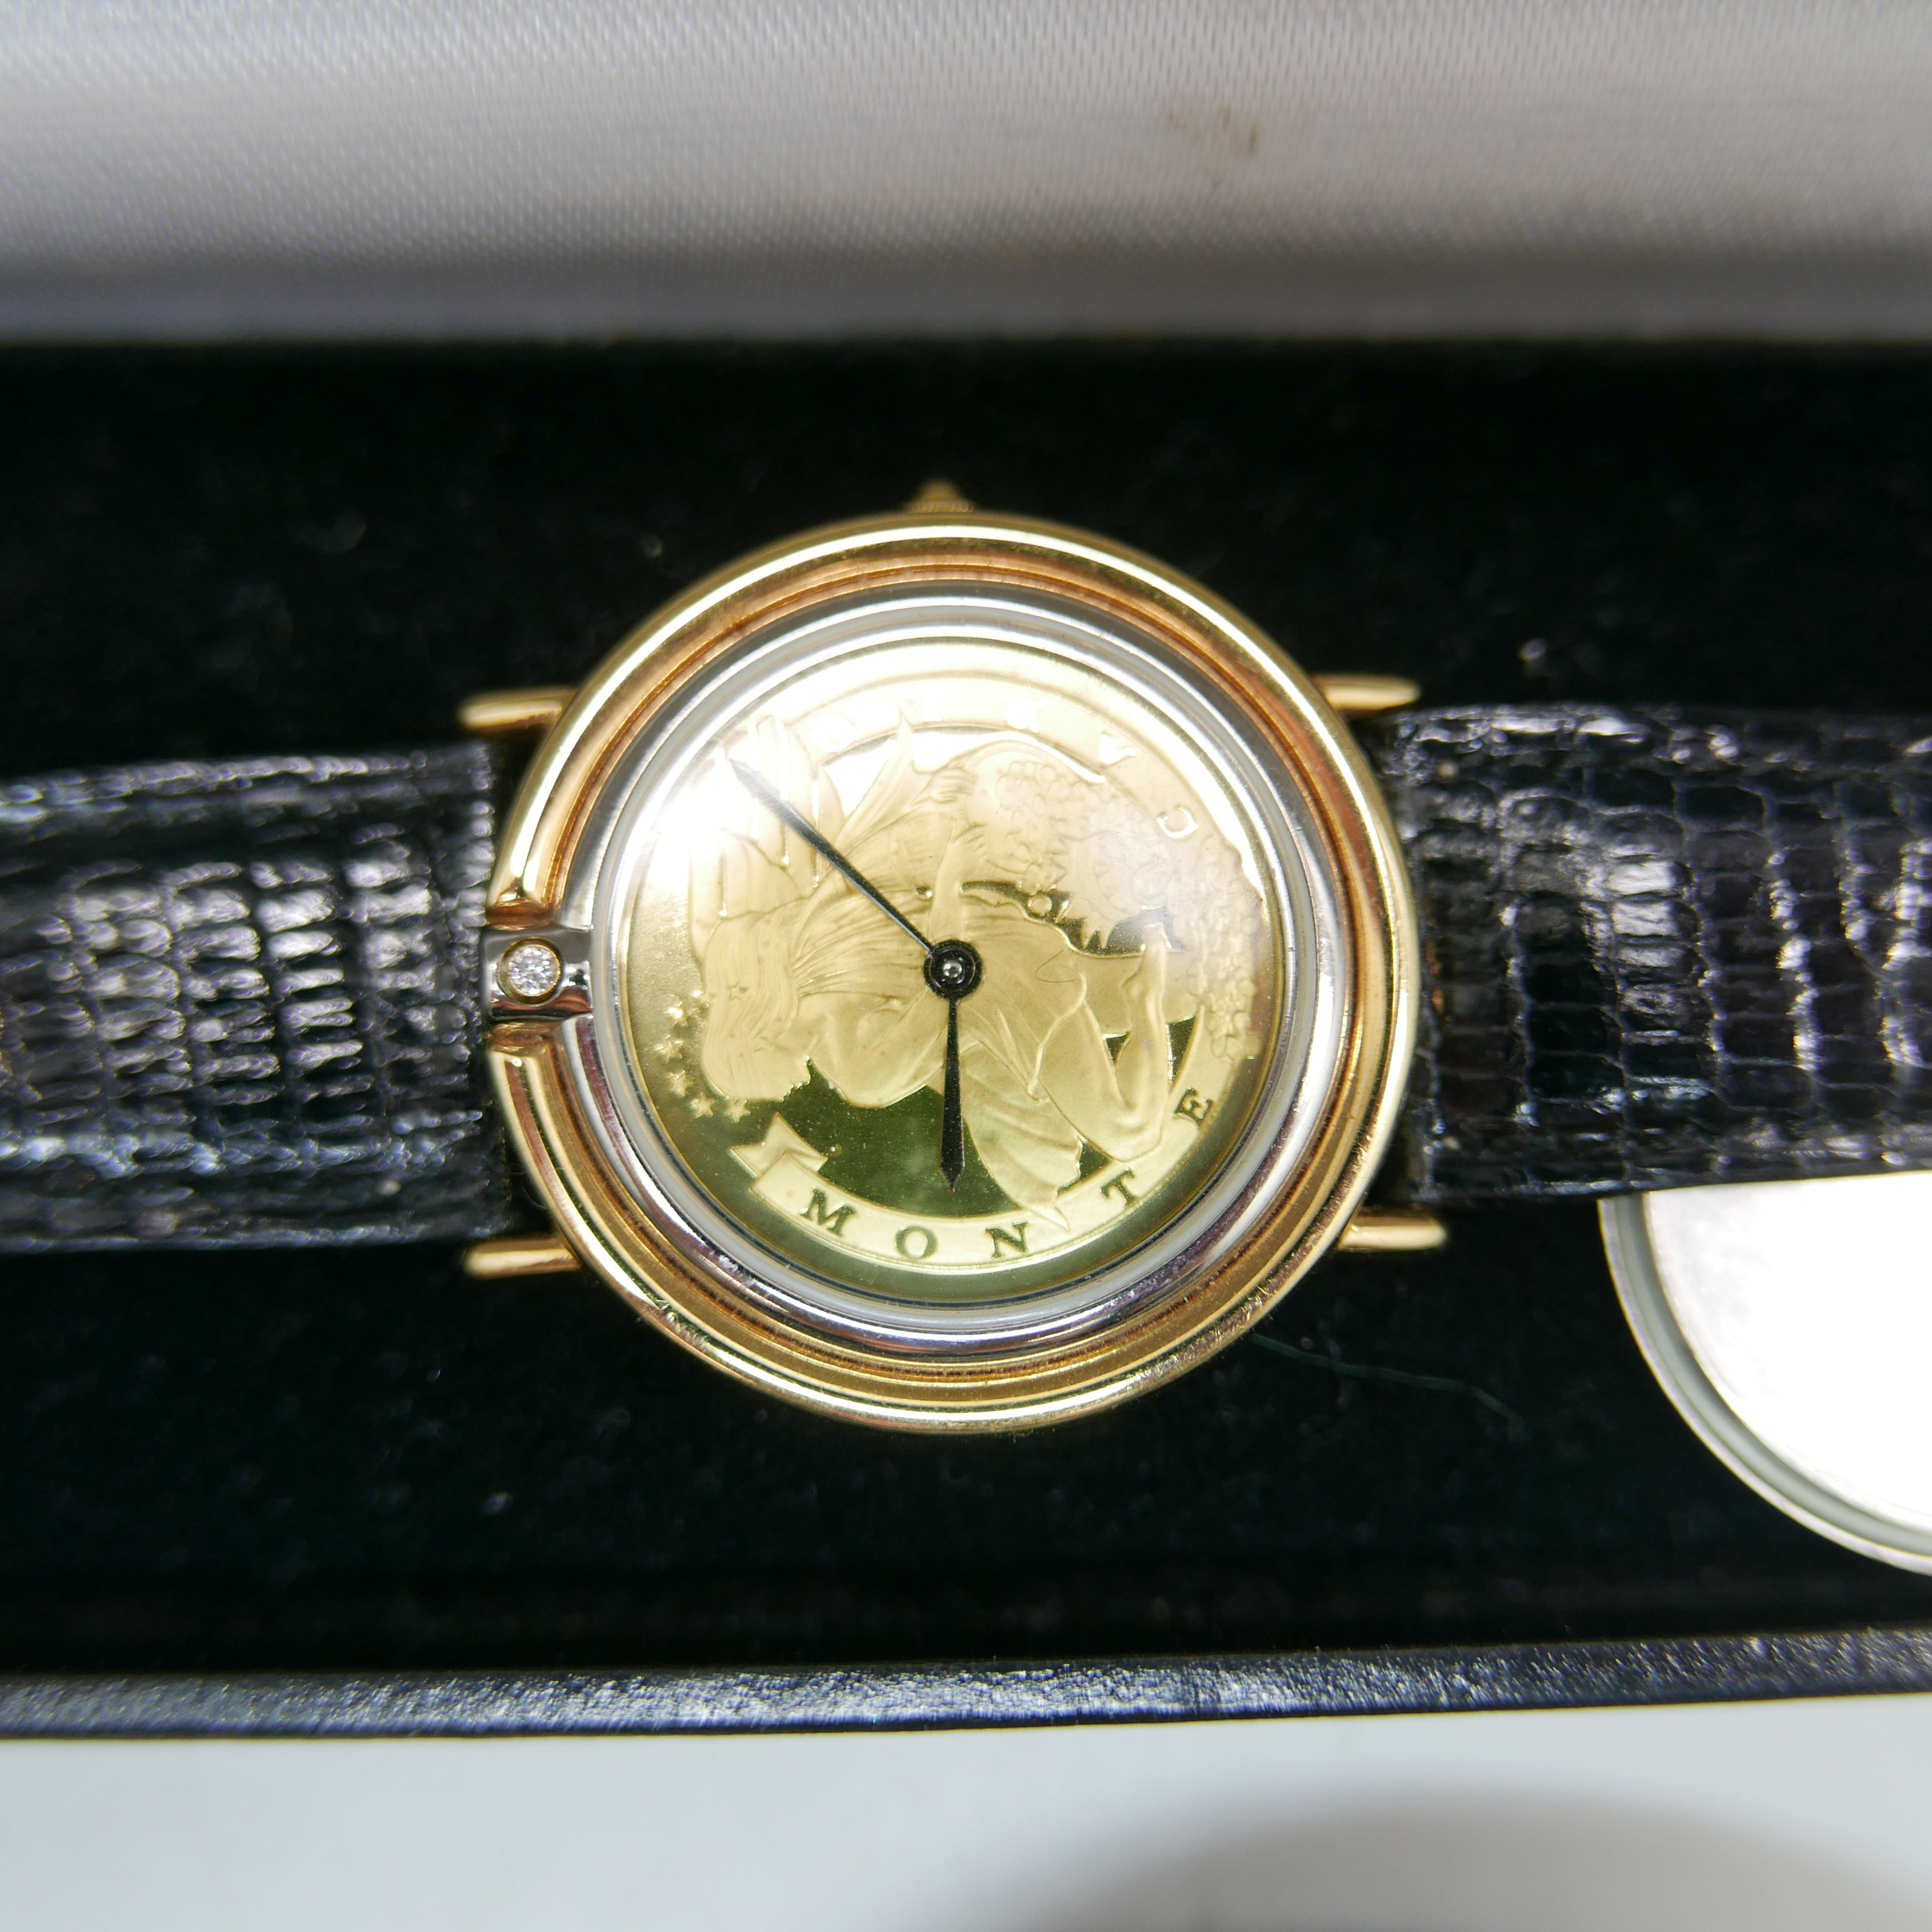 Wristwatches, Seiko 5 automatic day date movement 6119, Sekonda, etc. - Image 3 of 3